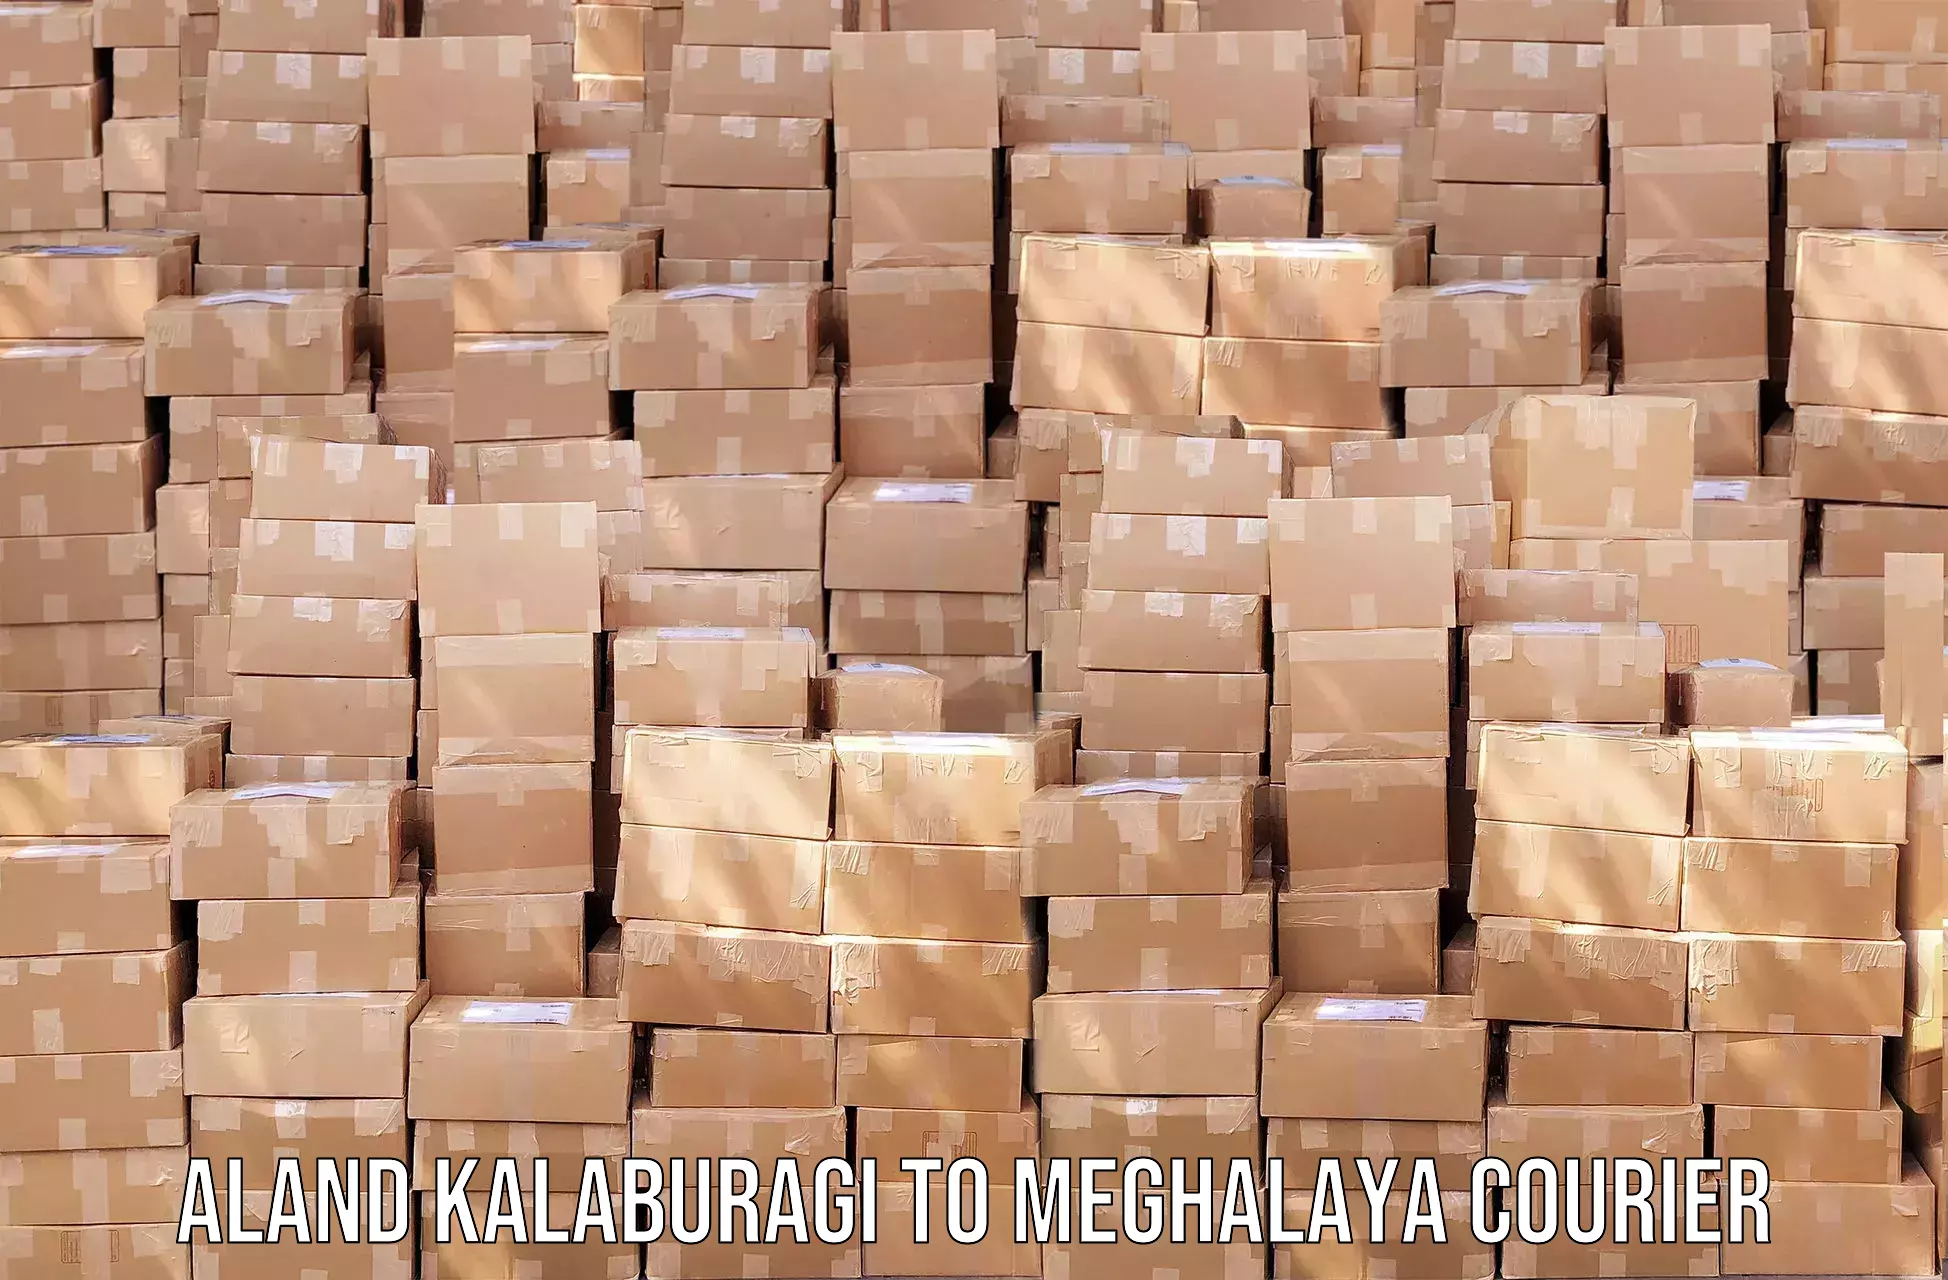 High-speed parcel service Aland Kalaburagi to Jaintia Hills